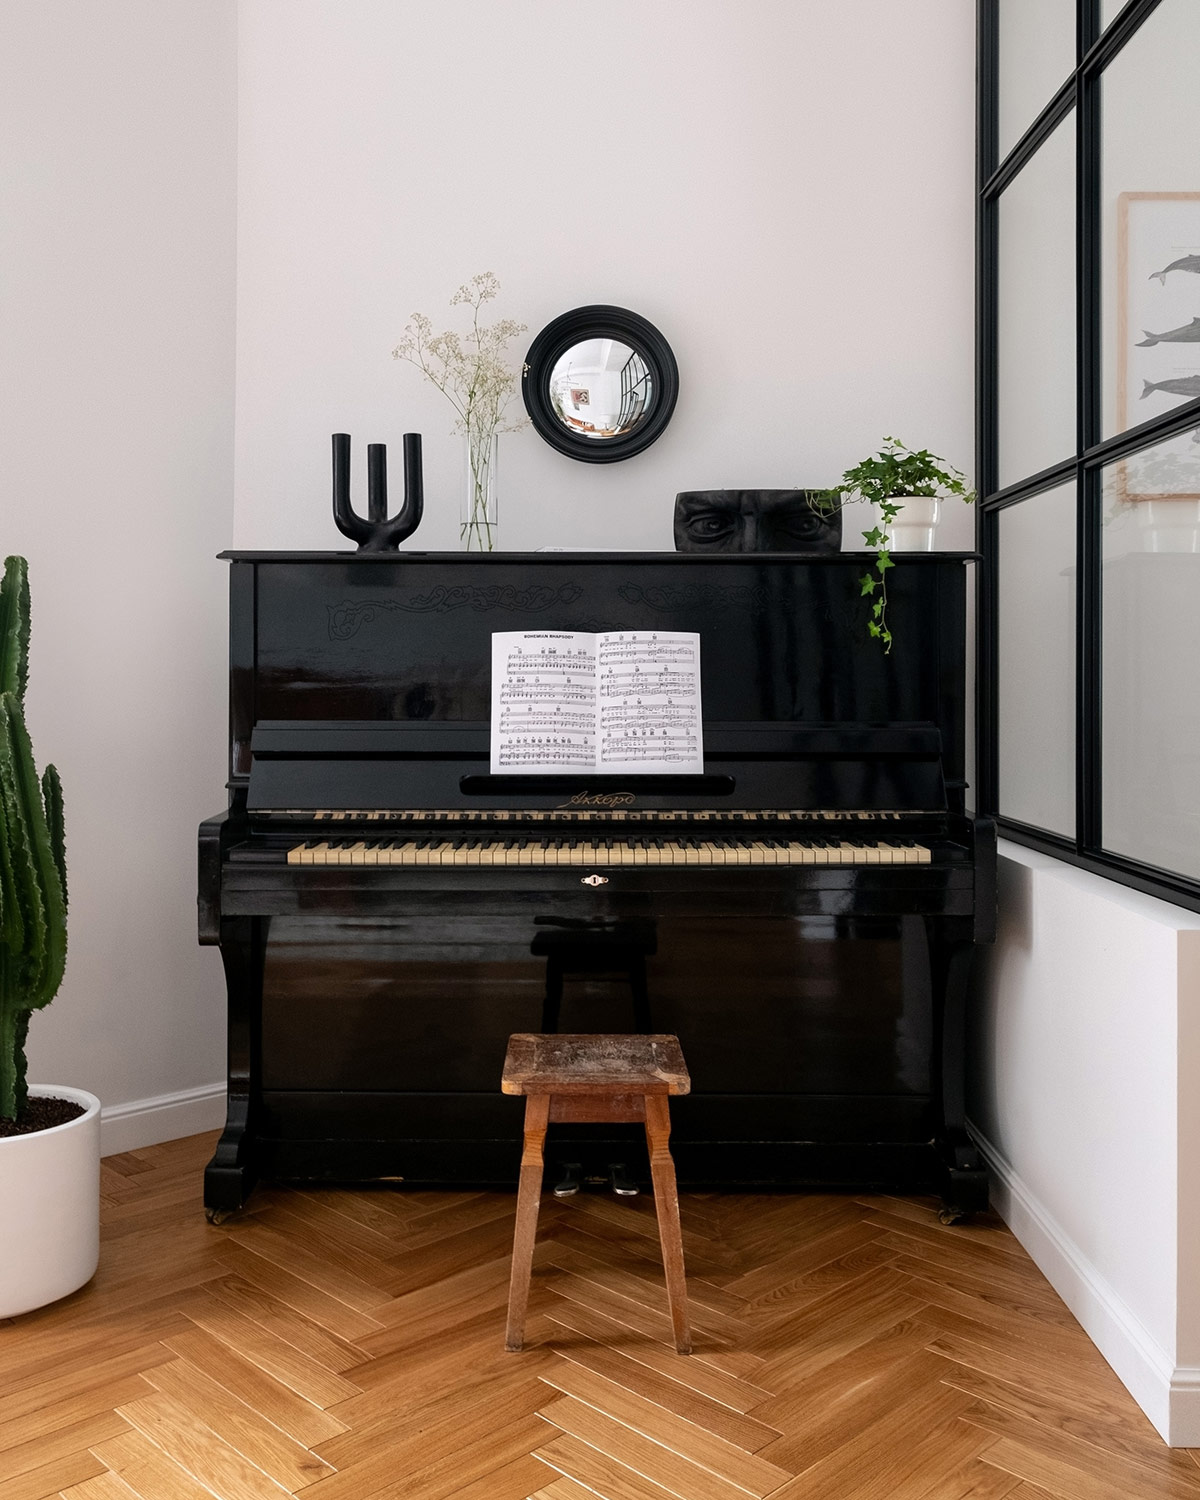 Không gian góc cạnh khó xử lý nhất trong phòng khách lại là nơi hoàn hảo cho một cây đàn piano cũ và một chiếc ghế đẩu mộc mạc. Gương nhỏ treo tường trang trí tạo thêm điểm sáng cho góc nhà.